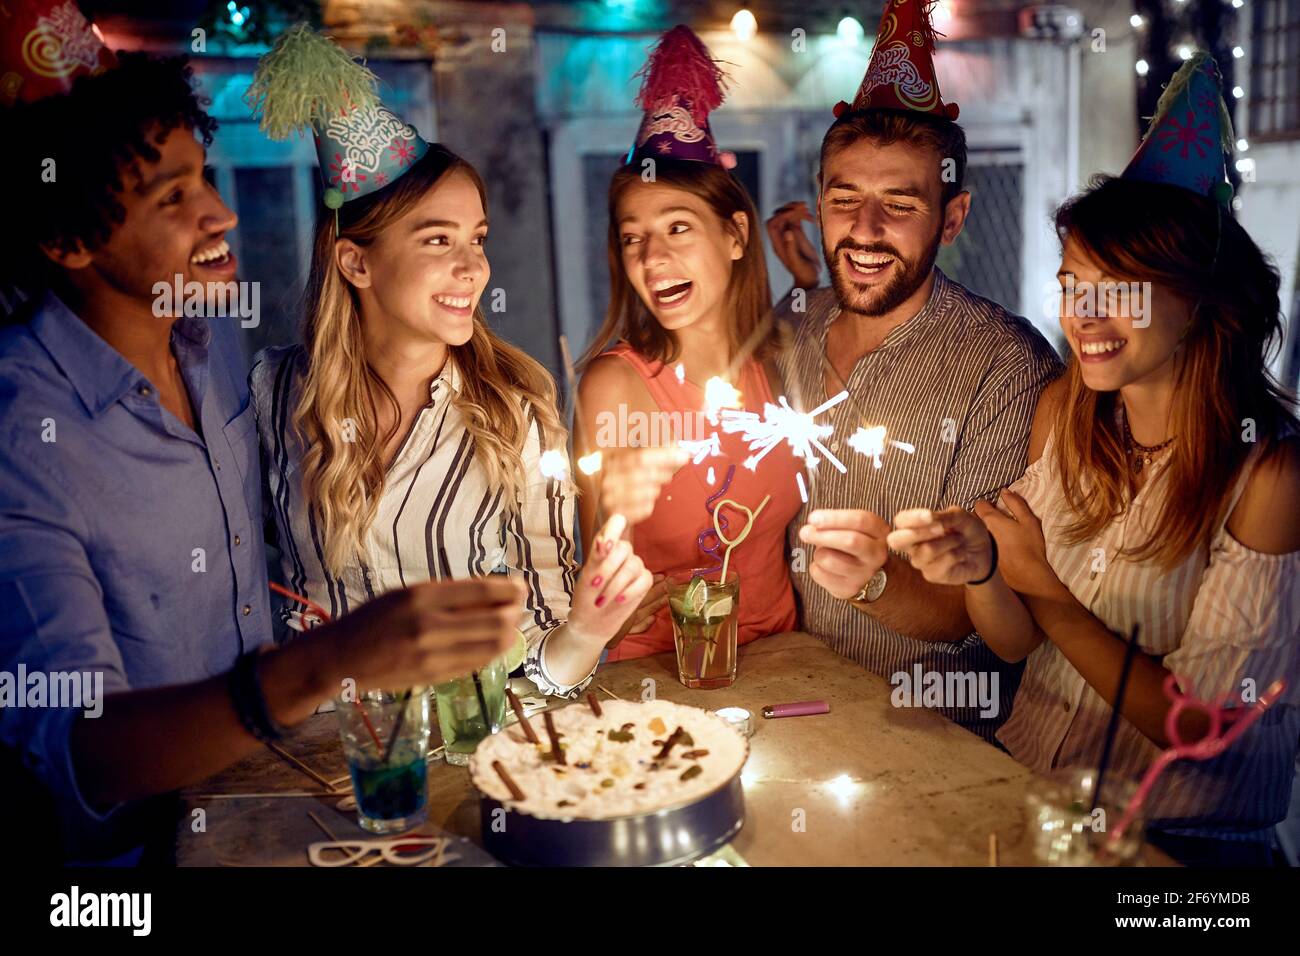 Eine Gruppe von Freunden genießt Sprinkler auf der Open-Air-Geburtstagsfeier an einem schönen Sommerabend. Gute Zeit der Freundschaft Stockfoto